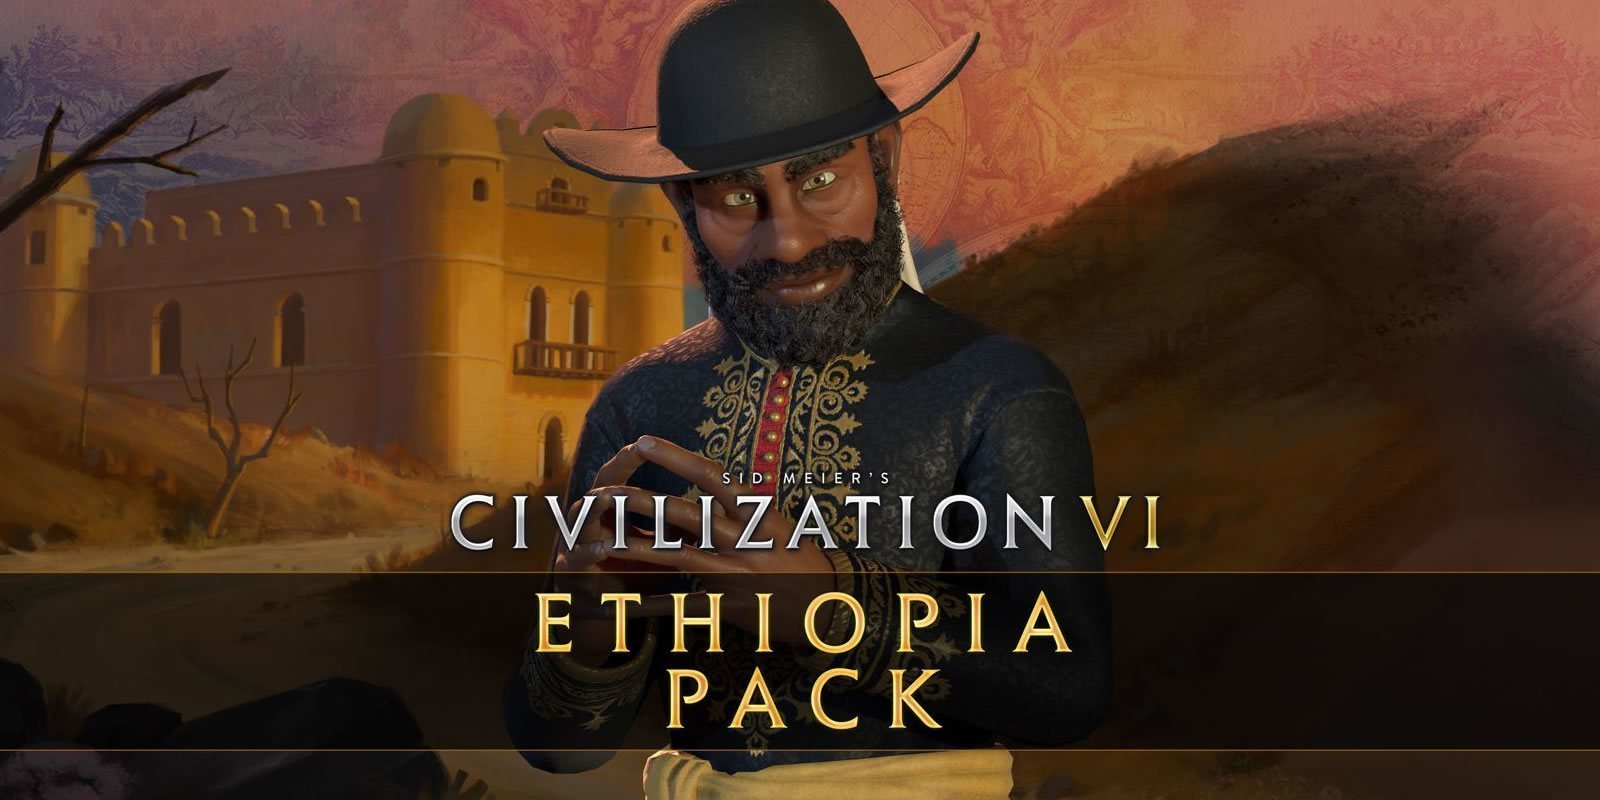 Análisis del pack Etiopía de 'Civilization VI', de Cthulhu y vampiros